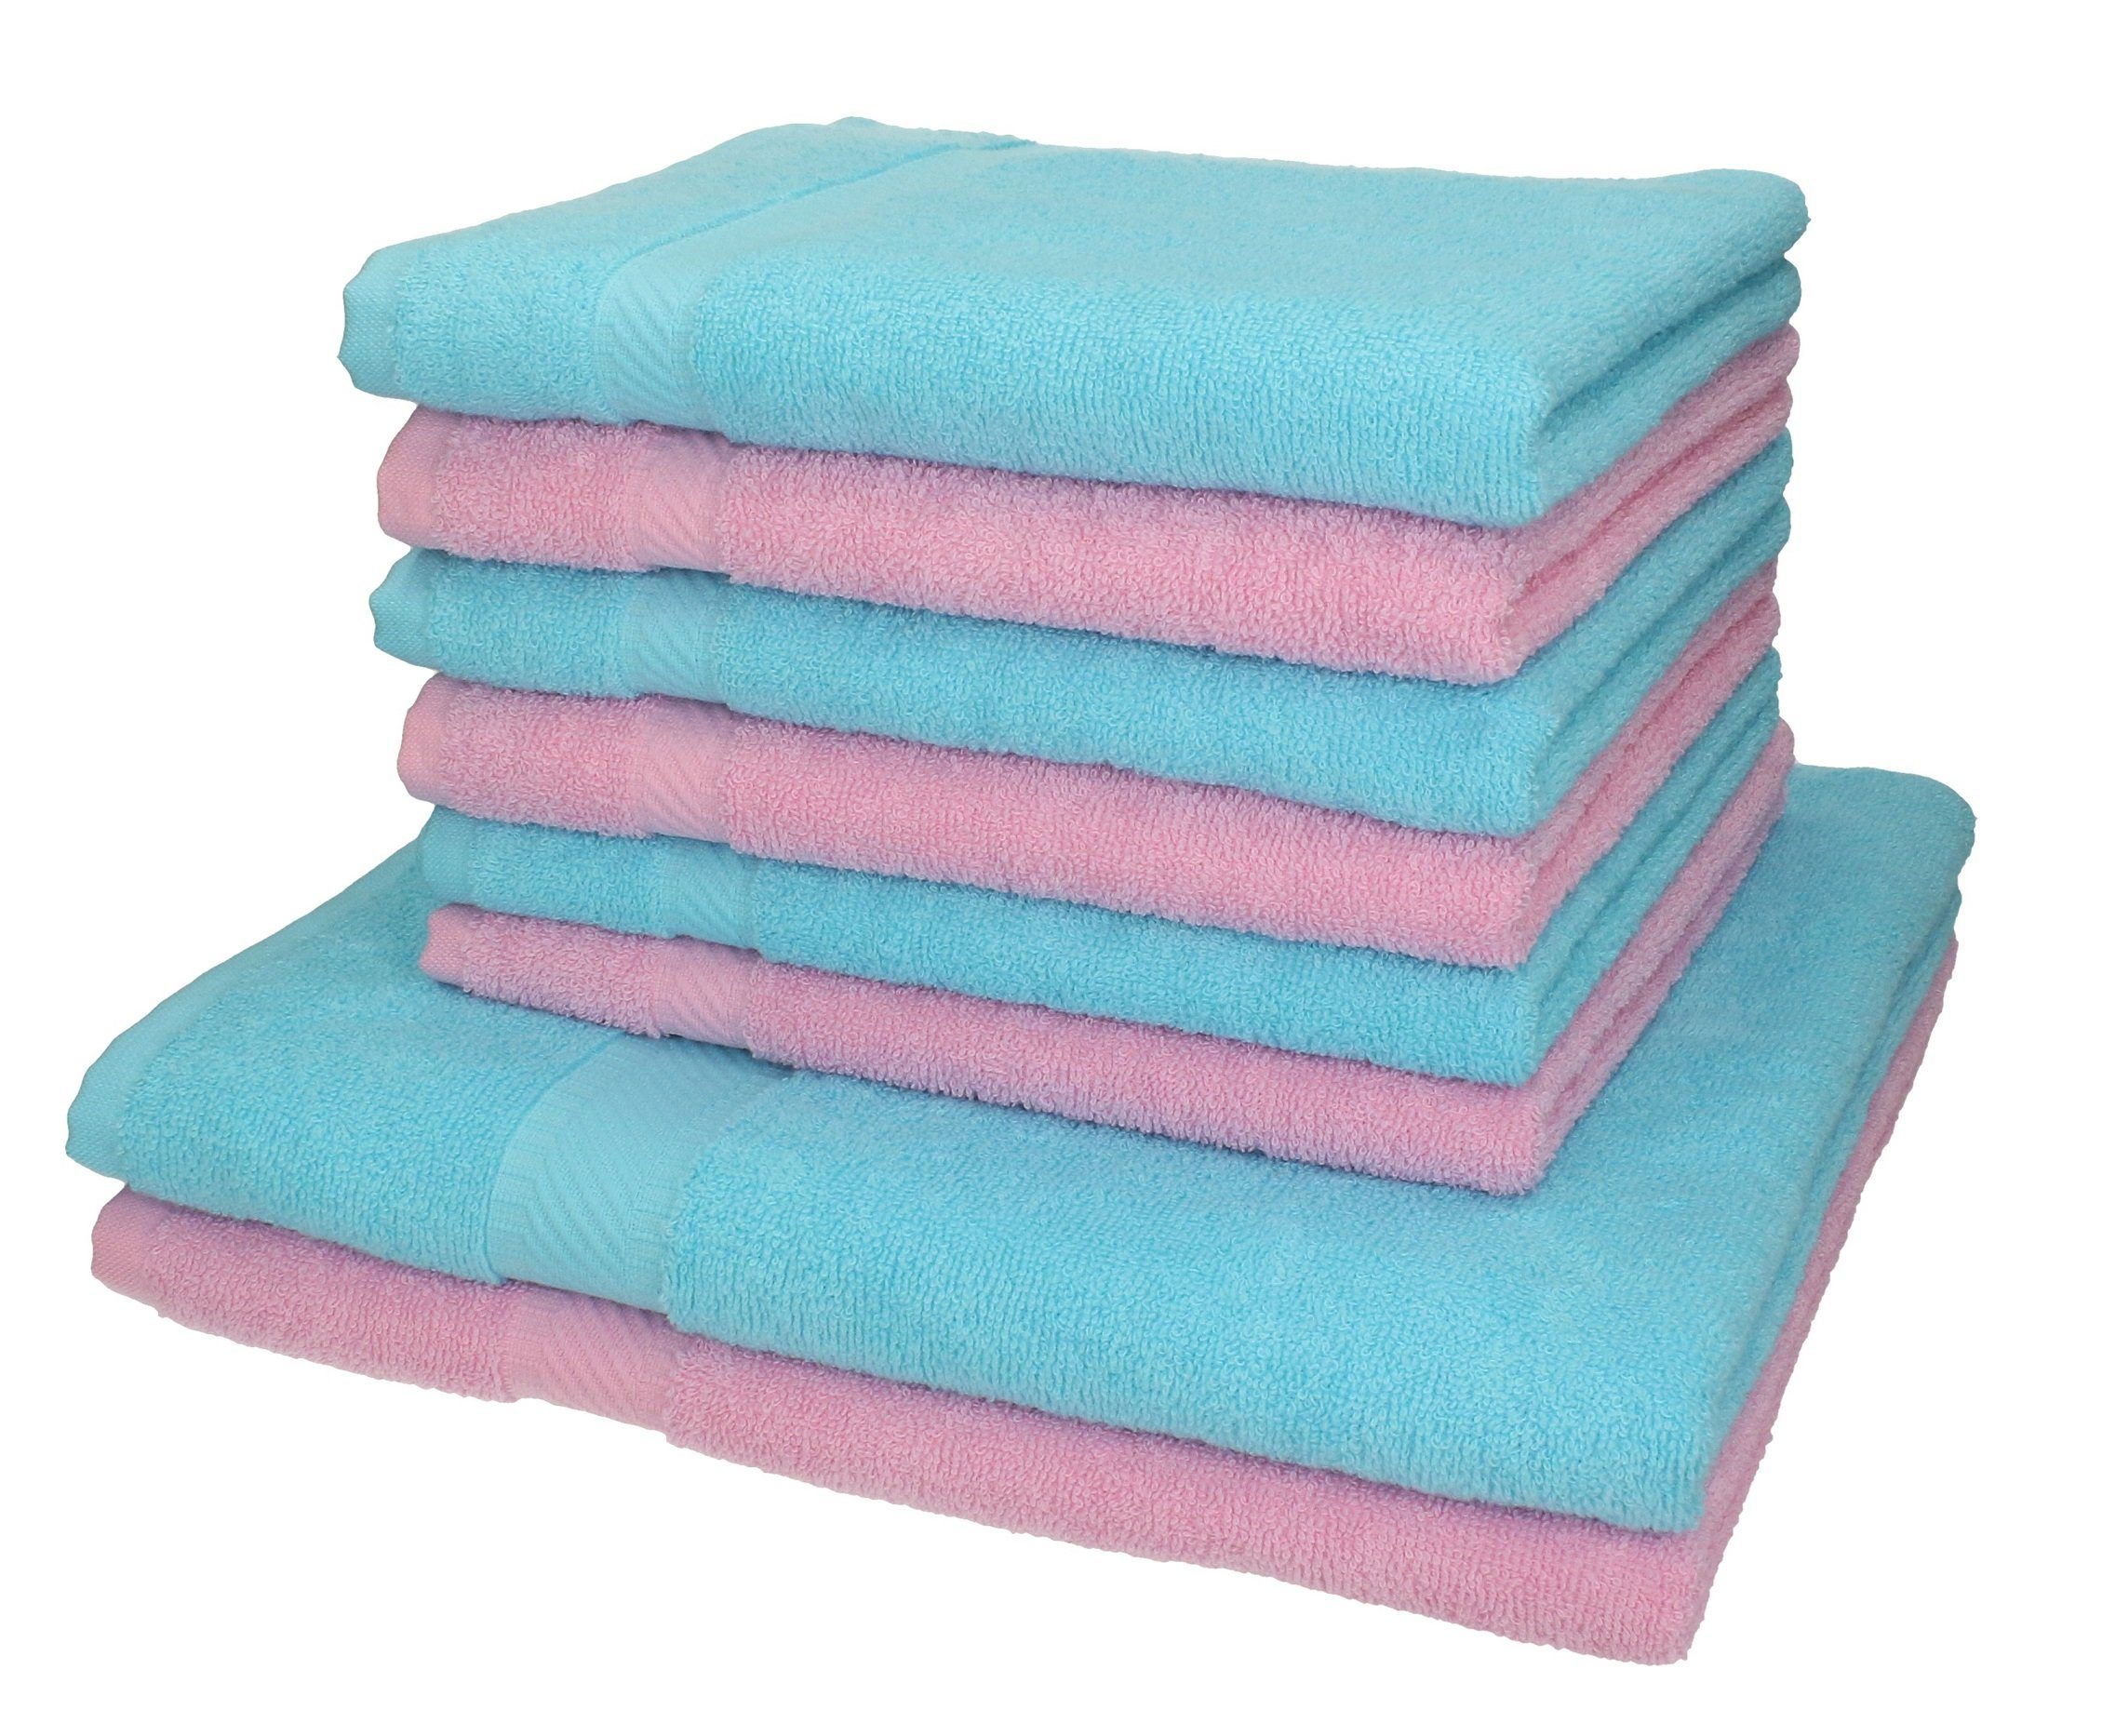 Betz Handtuch Set 8-TLG. Handtuch-Set Palermo 100% Baumwolle 2 Duschtücher 6 Handtücher Farbe rosé und türkis, 100% Baumwolle